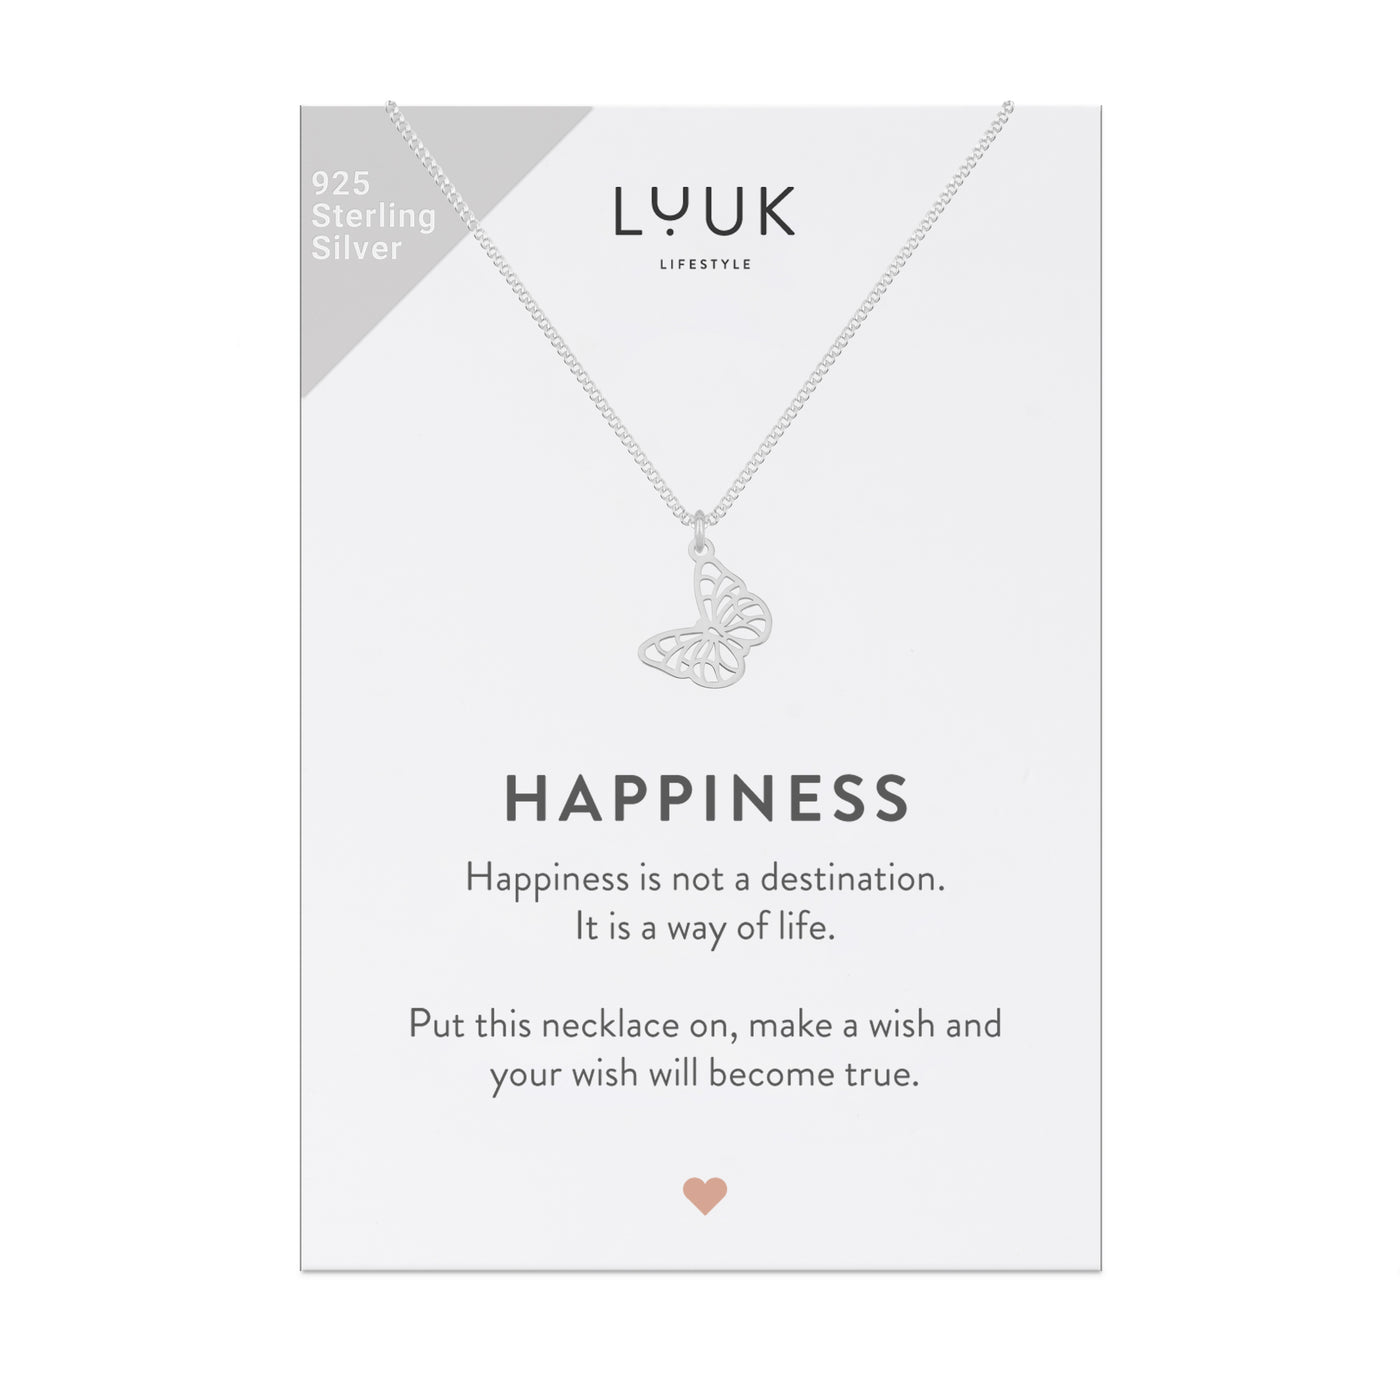 Feine 925 Silber Kette mit Schmetterling Anhänger auf Happiness Spruchkarte von der Marke Luuk Lifestyle 